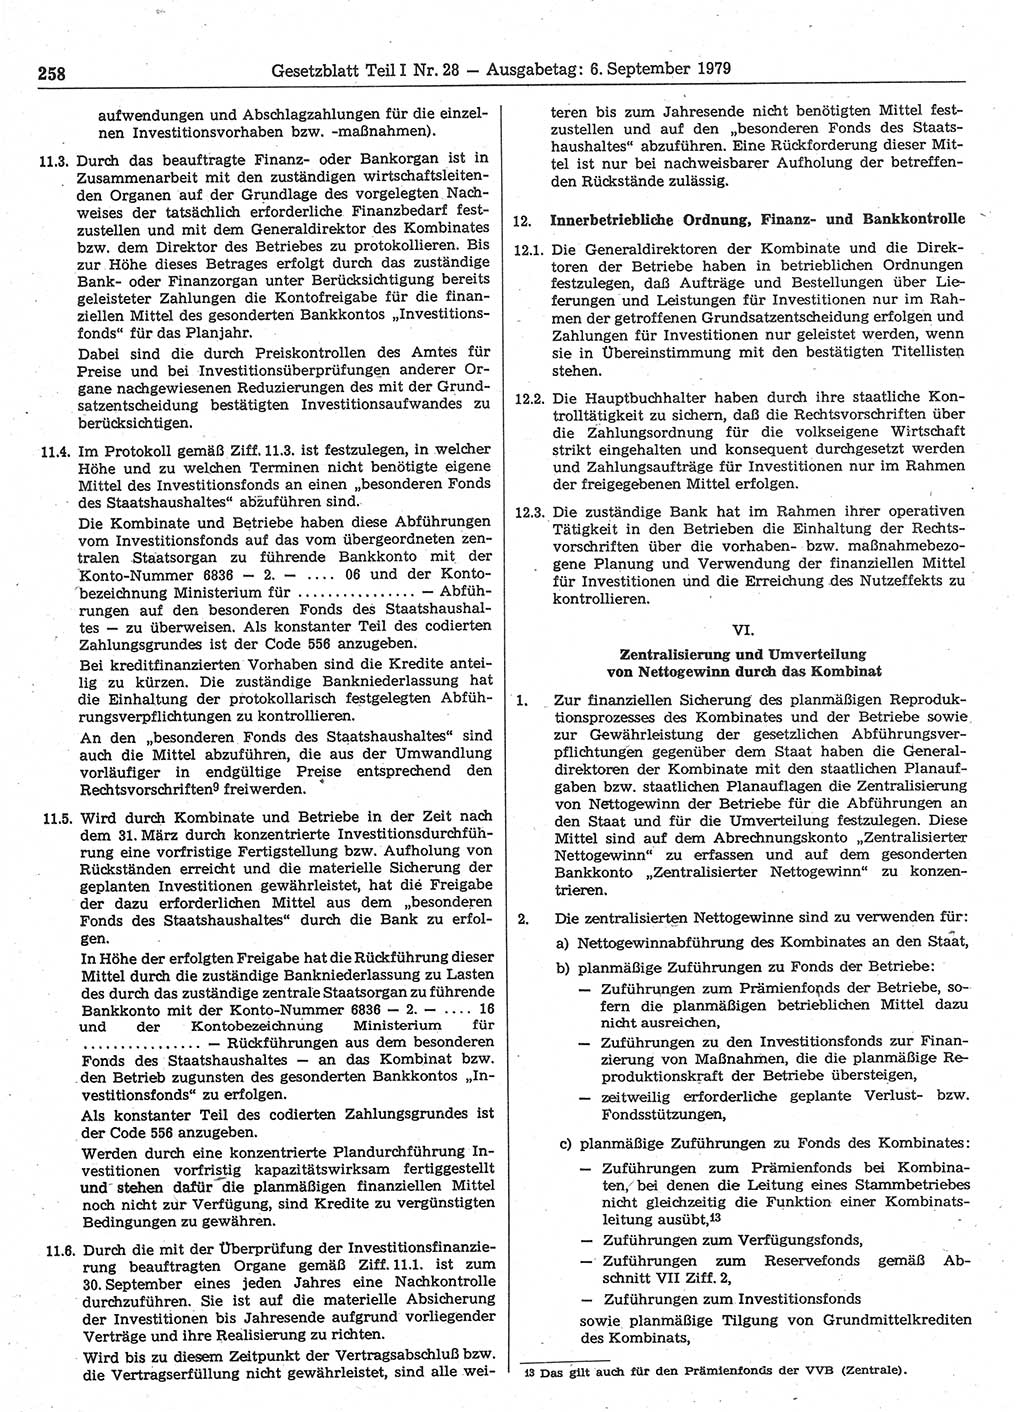 Gesetzblatt (GBl.) der Deutschen Demokratischen Republik (DDR) Teil Ⅰ 1979, Seite 258 (GBl. DDR Ⅰ 1979, S. 258)